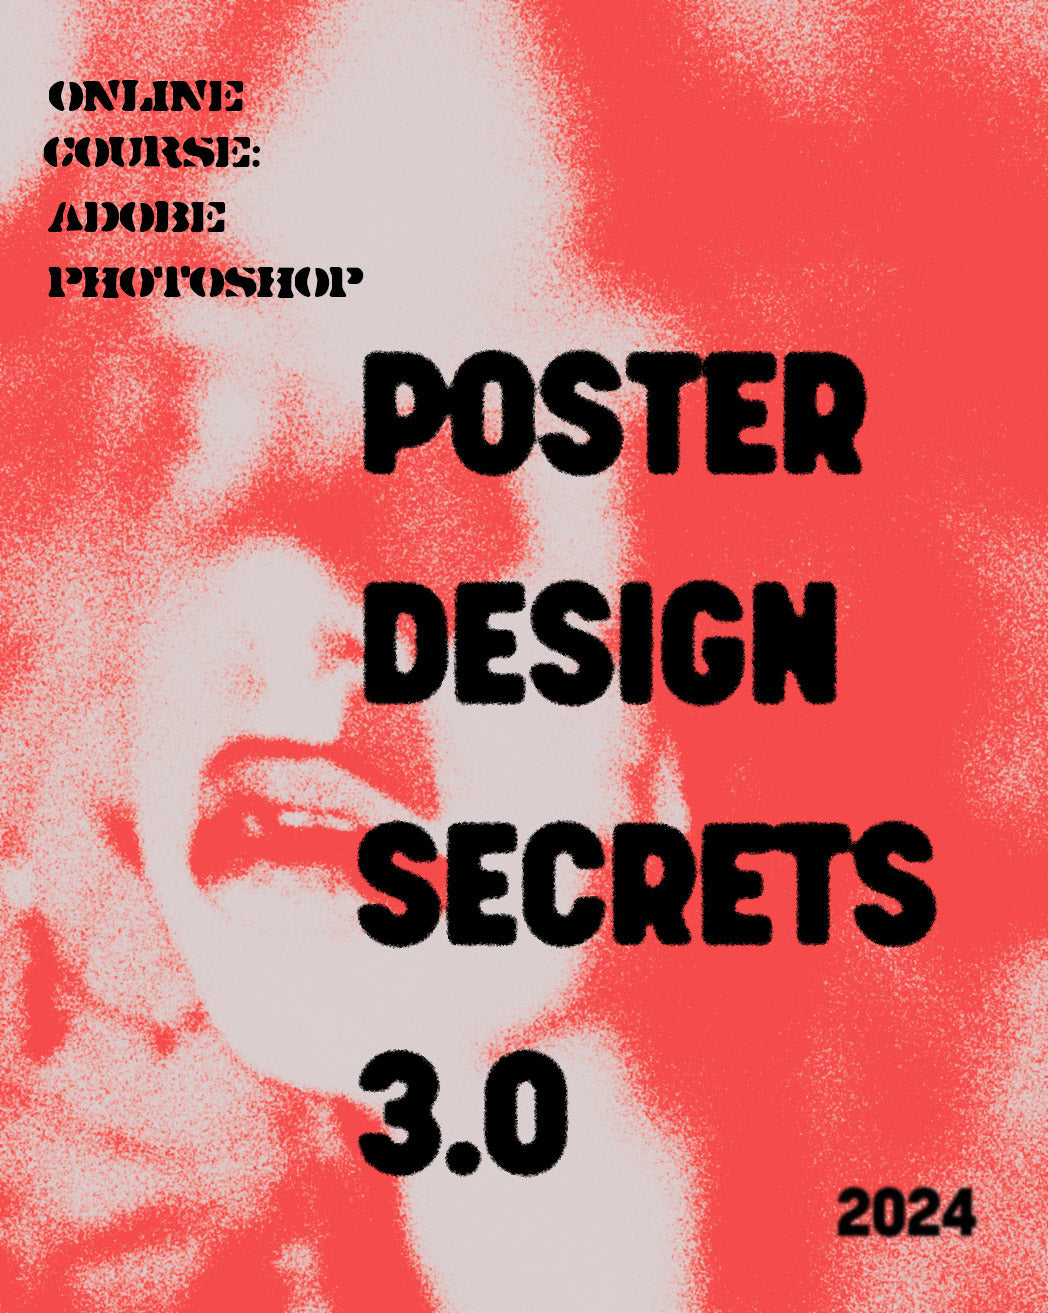 Poster Design Secrets course EXTENSION